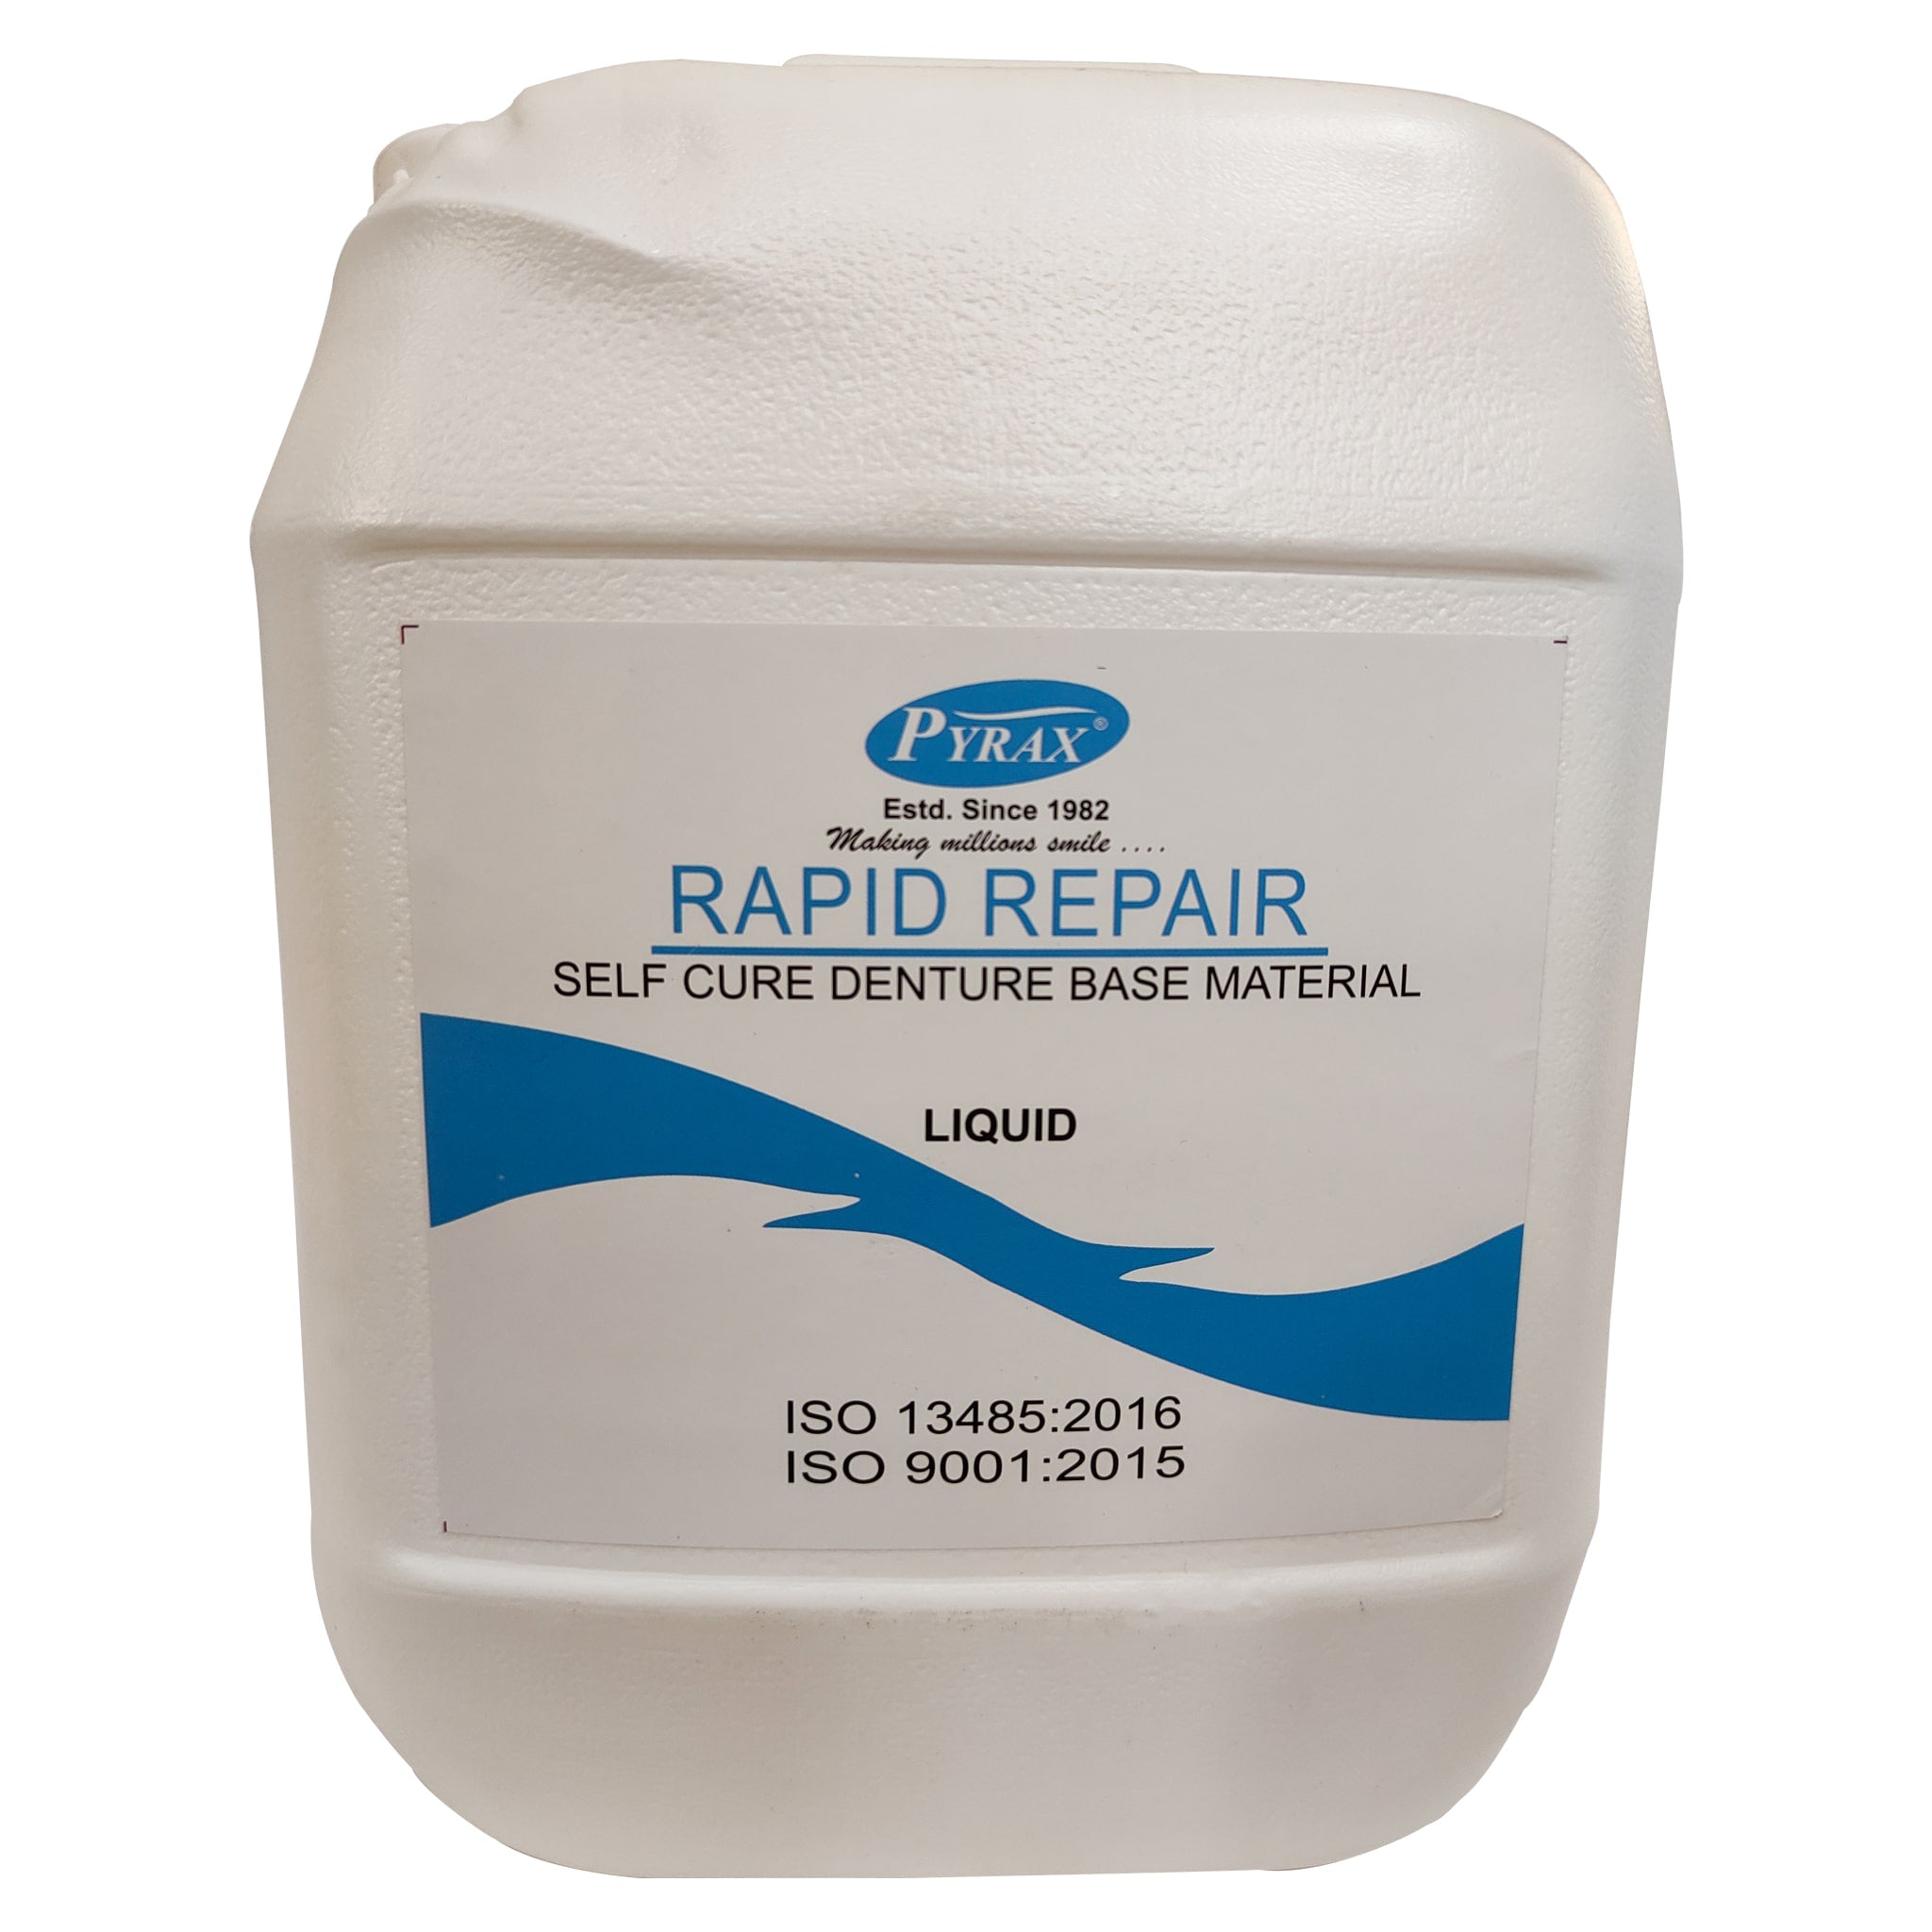 Pyrax Rapid Repair Liquid